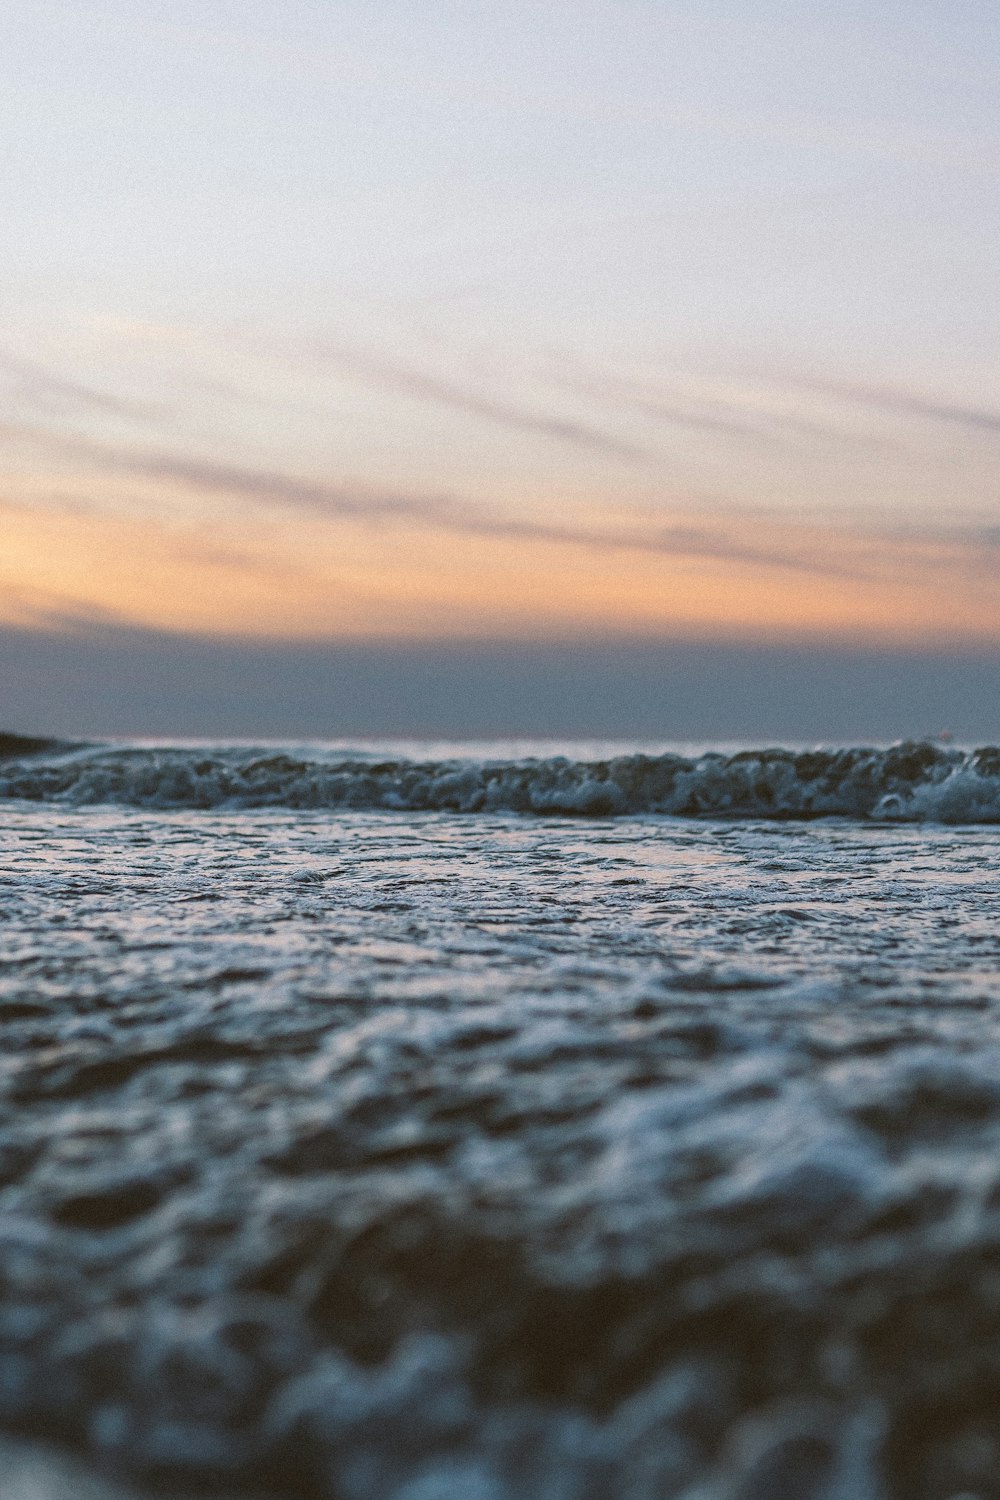 ocean waves crashing on shore during sunset